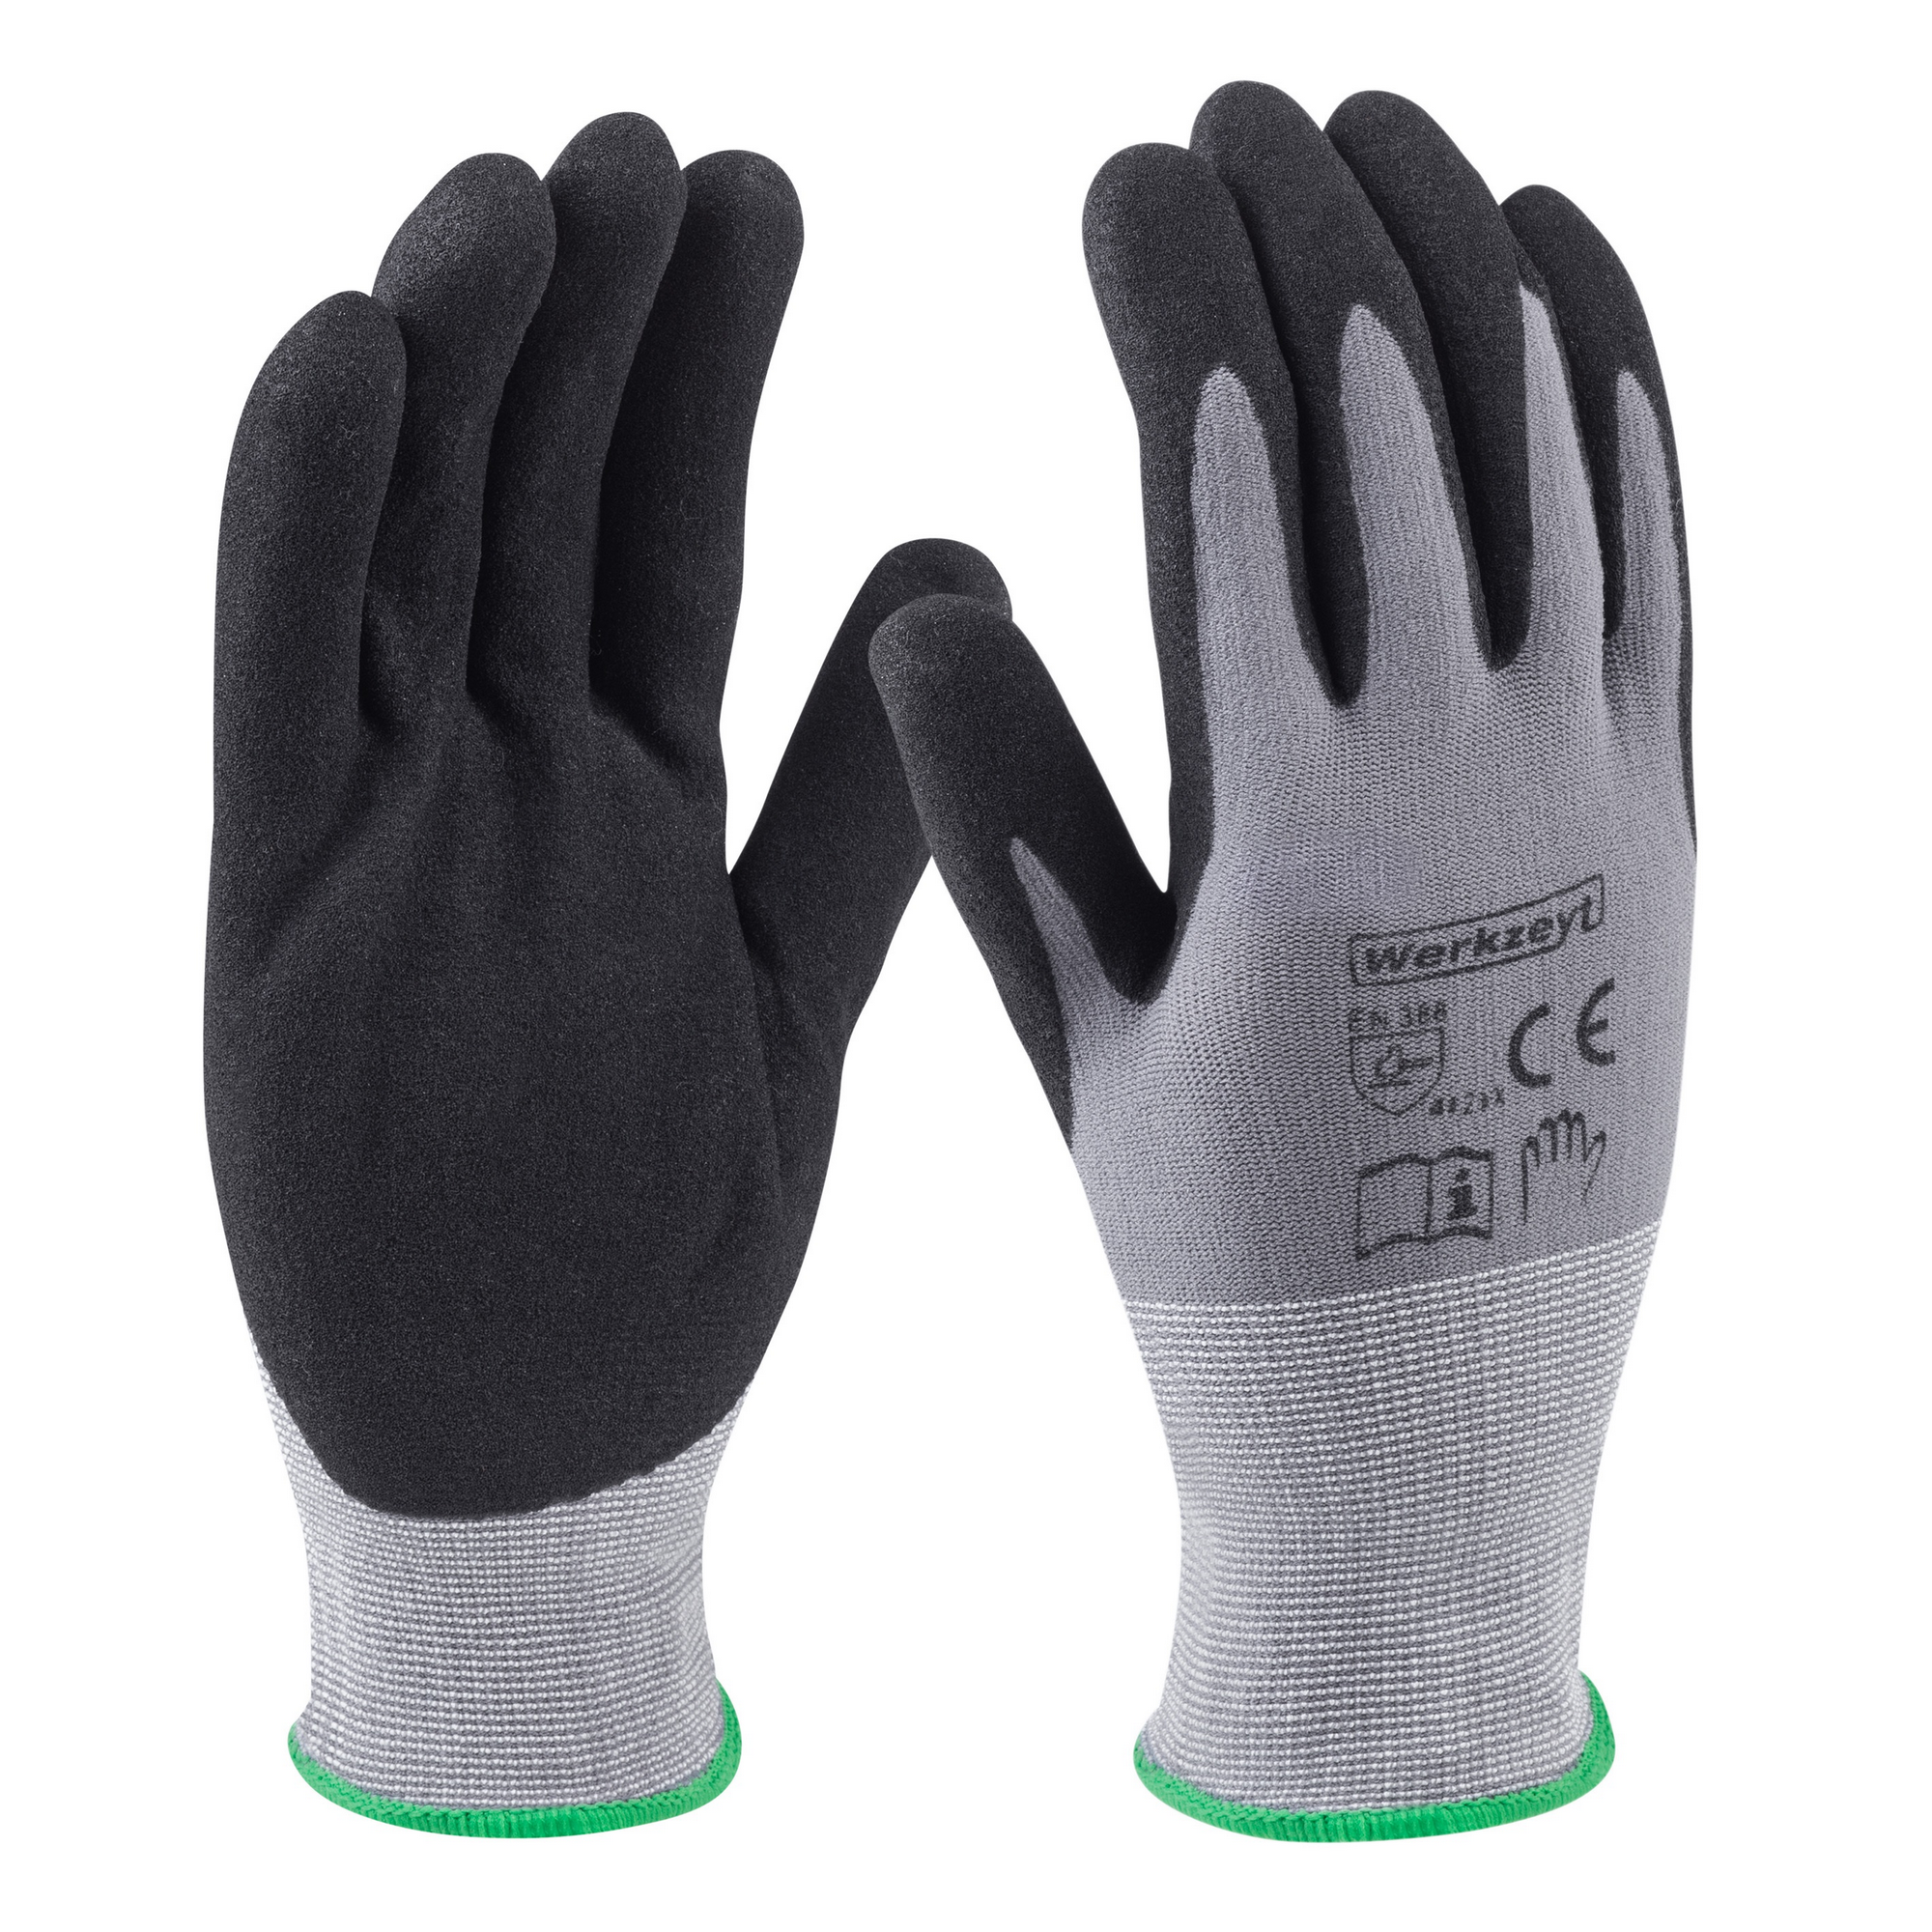 Handschuhe 'Comfort Super Plus' grau/schwarz Gr. 10/XL + product picture